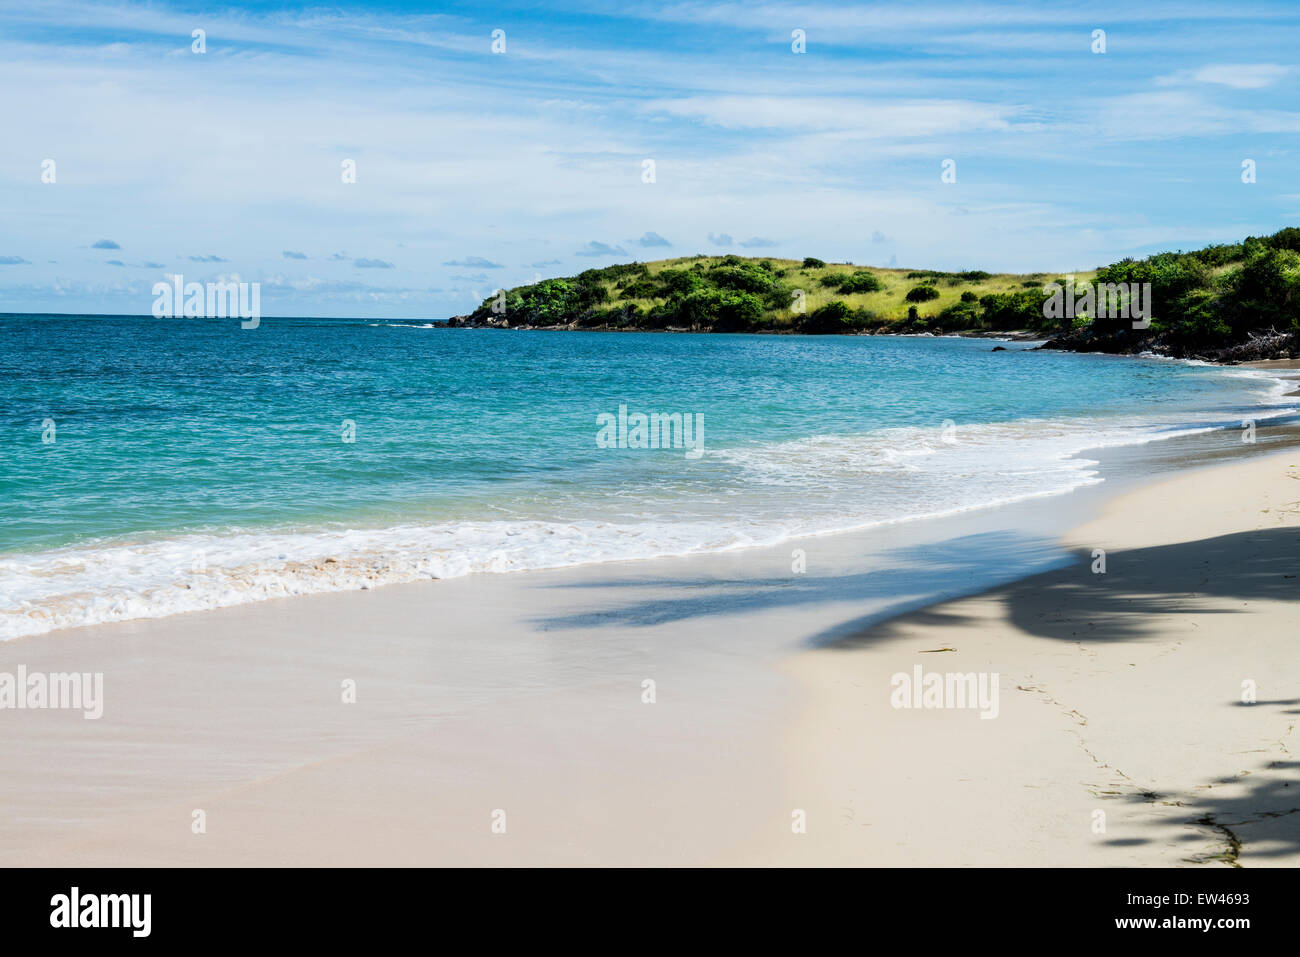 Una vista de la playa en el extremo este de Saint Croix, Islas Vírgenes de EE.UU., mostrando la sombra de una palmera en la playa. Foto de stock